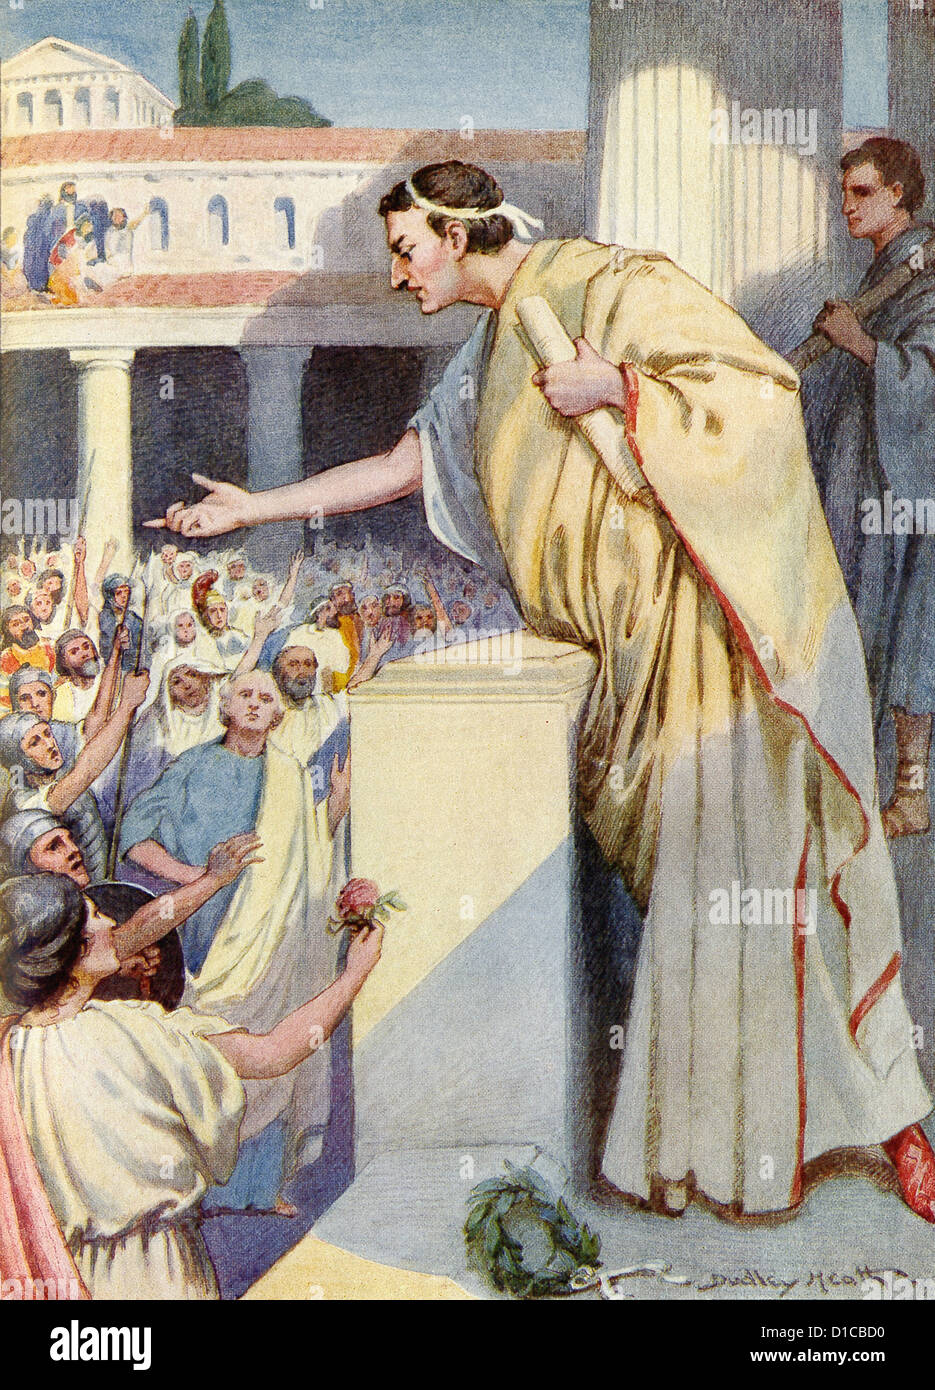 Marcus Tullius Cicero nimmt seine Klage gegen den römischen Politiker/Senator Lucius Sergius Catiline, das römische Volk. Stockfoto